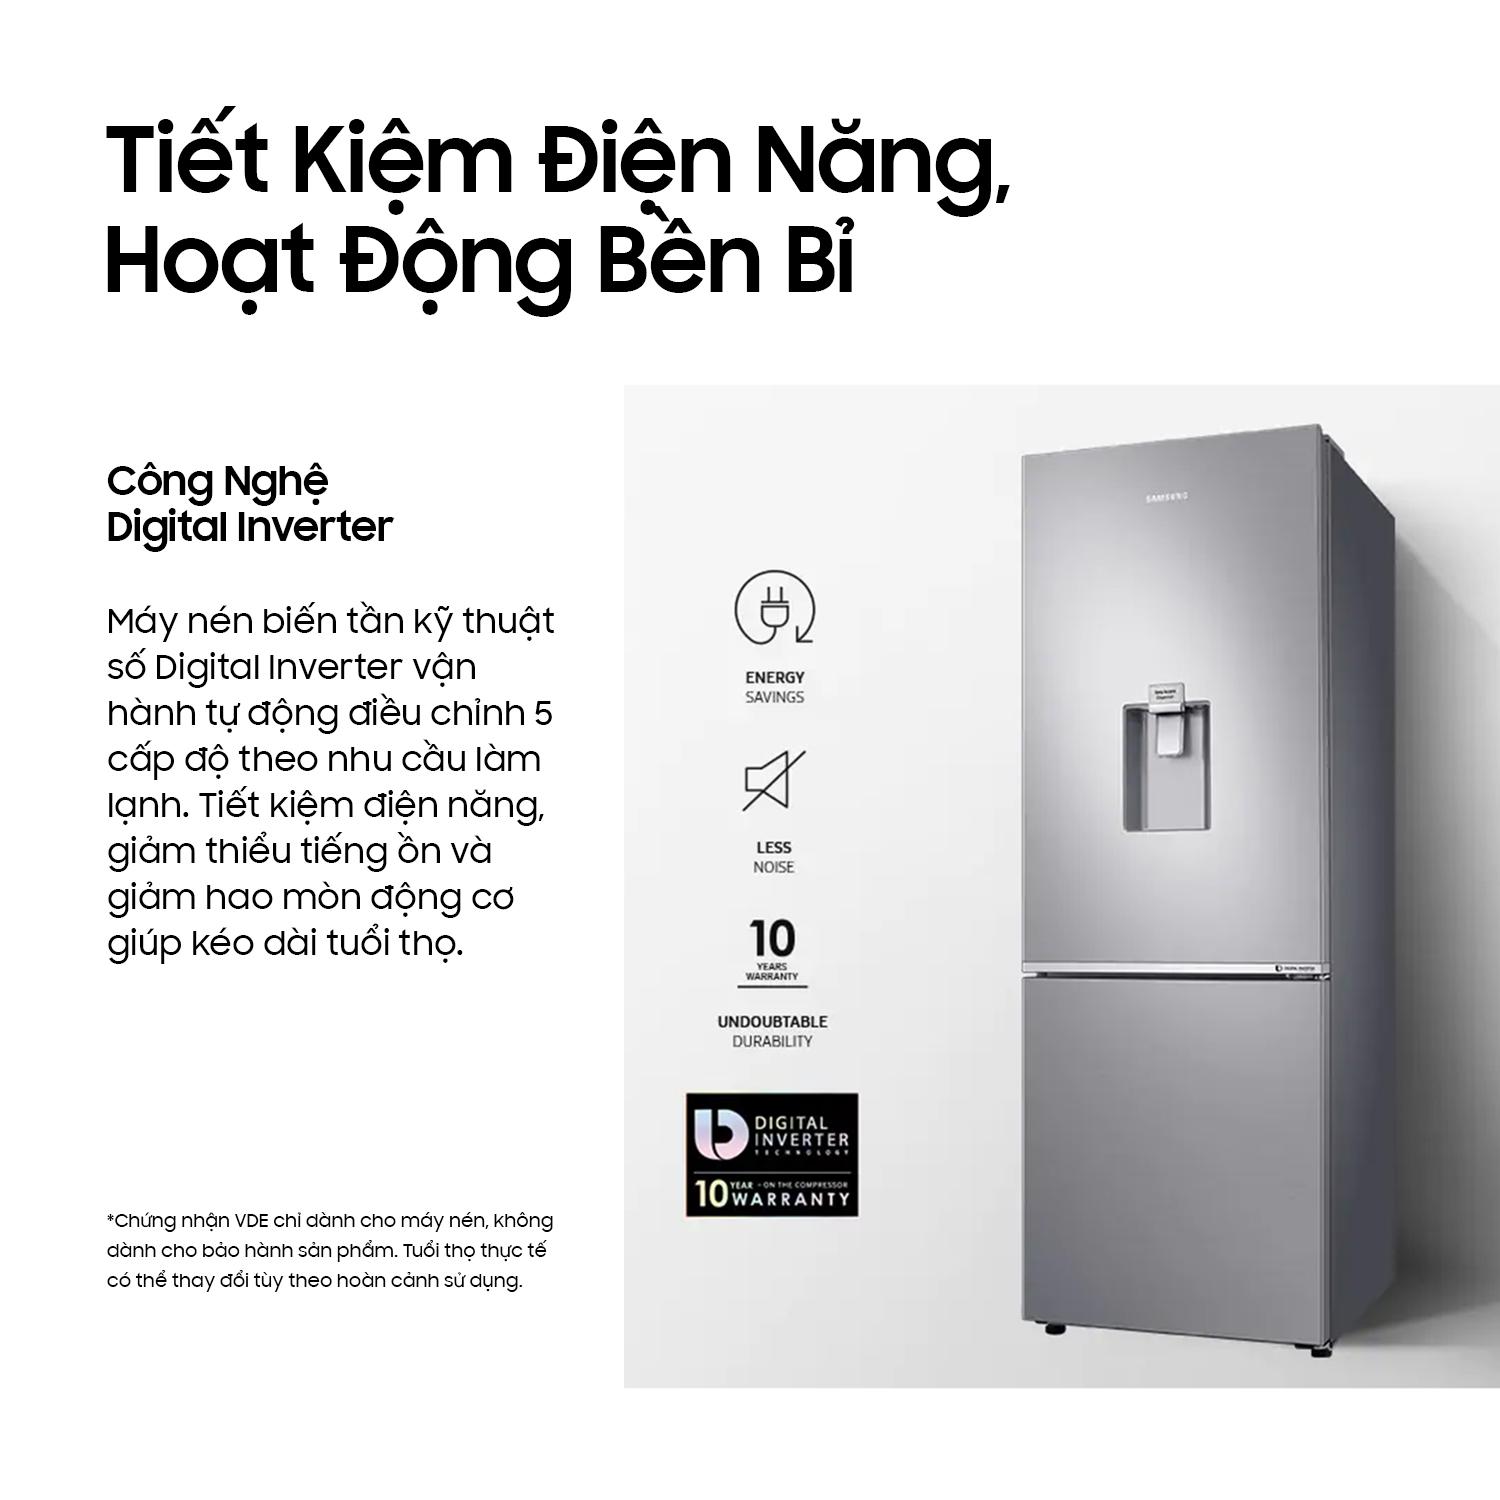 Tủ lạnh Samsung Inverter Hai Cửa Ngăn Đông Dưới 276L (B27N4180B1/SV) - Công nghệ làm lạnh vòm - Bộ lọc...